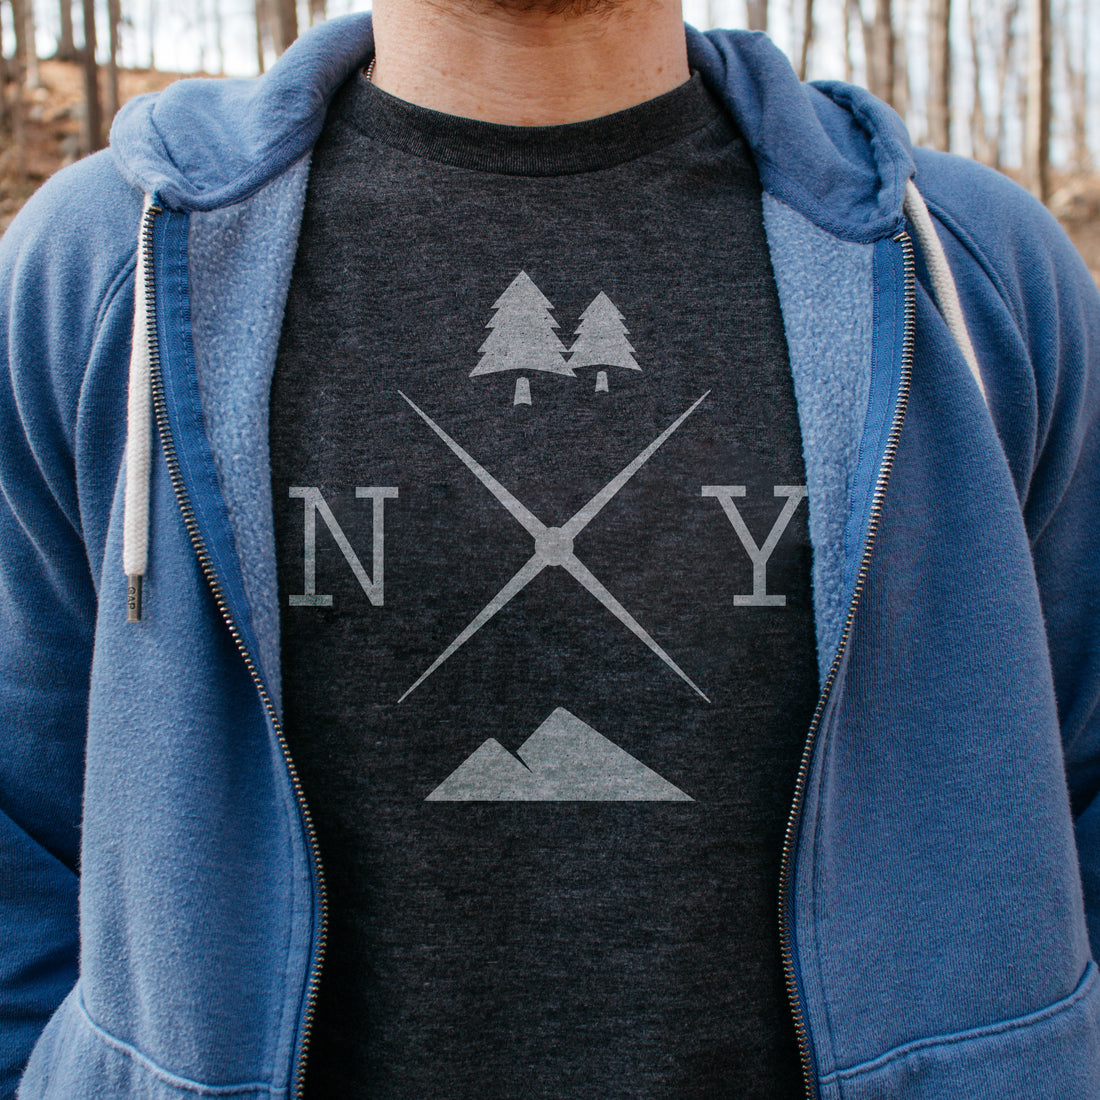 New York Nature Tee Shirt